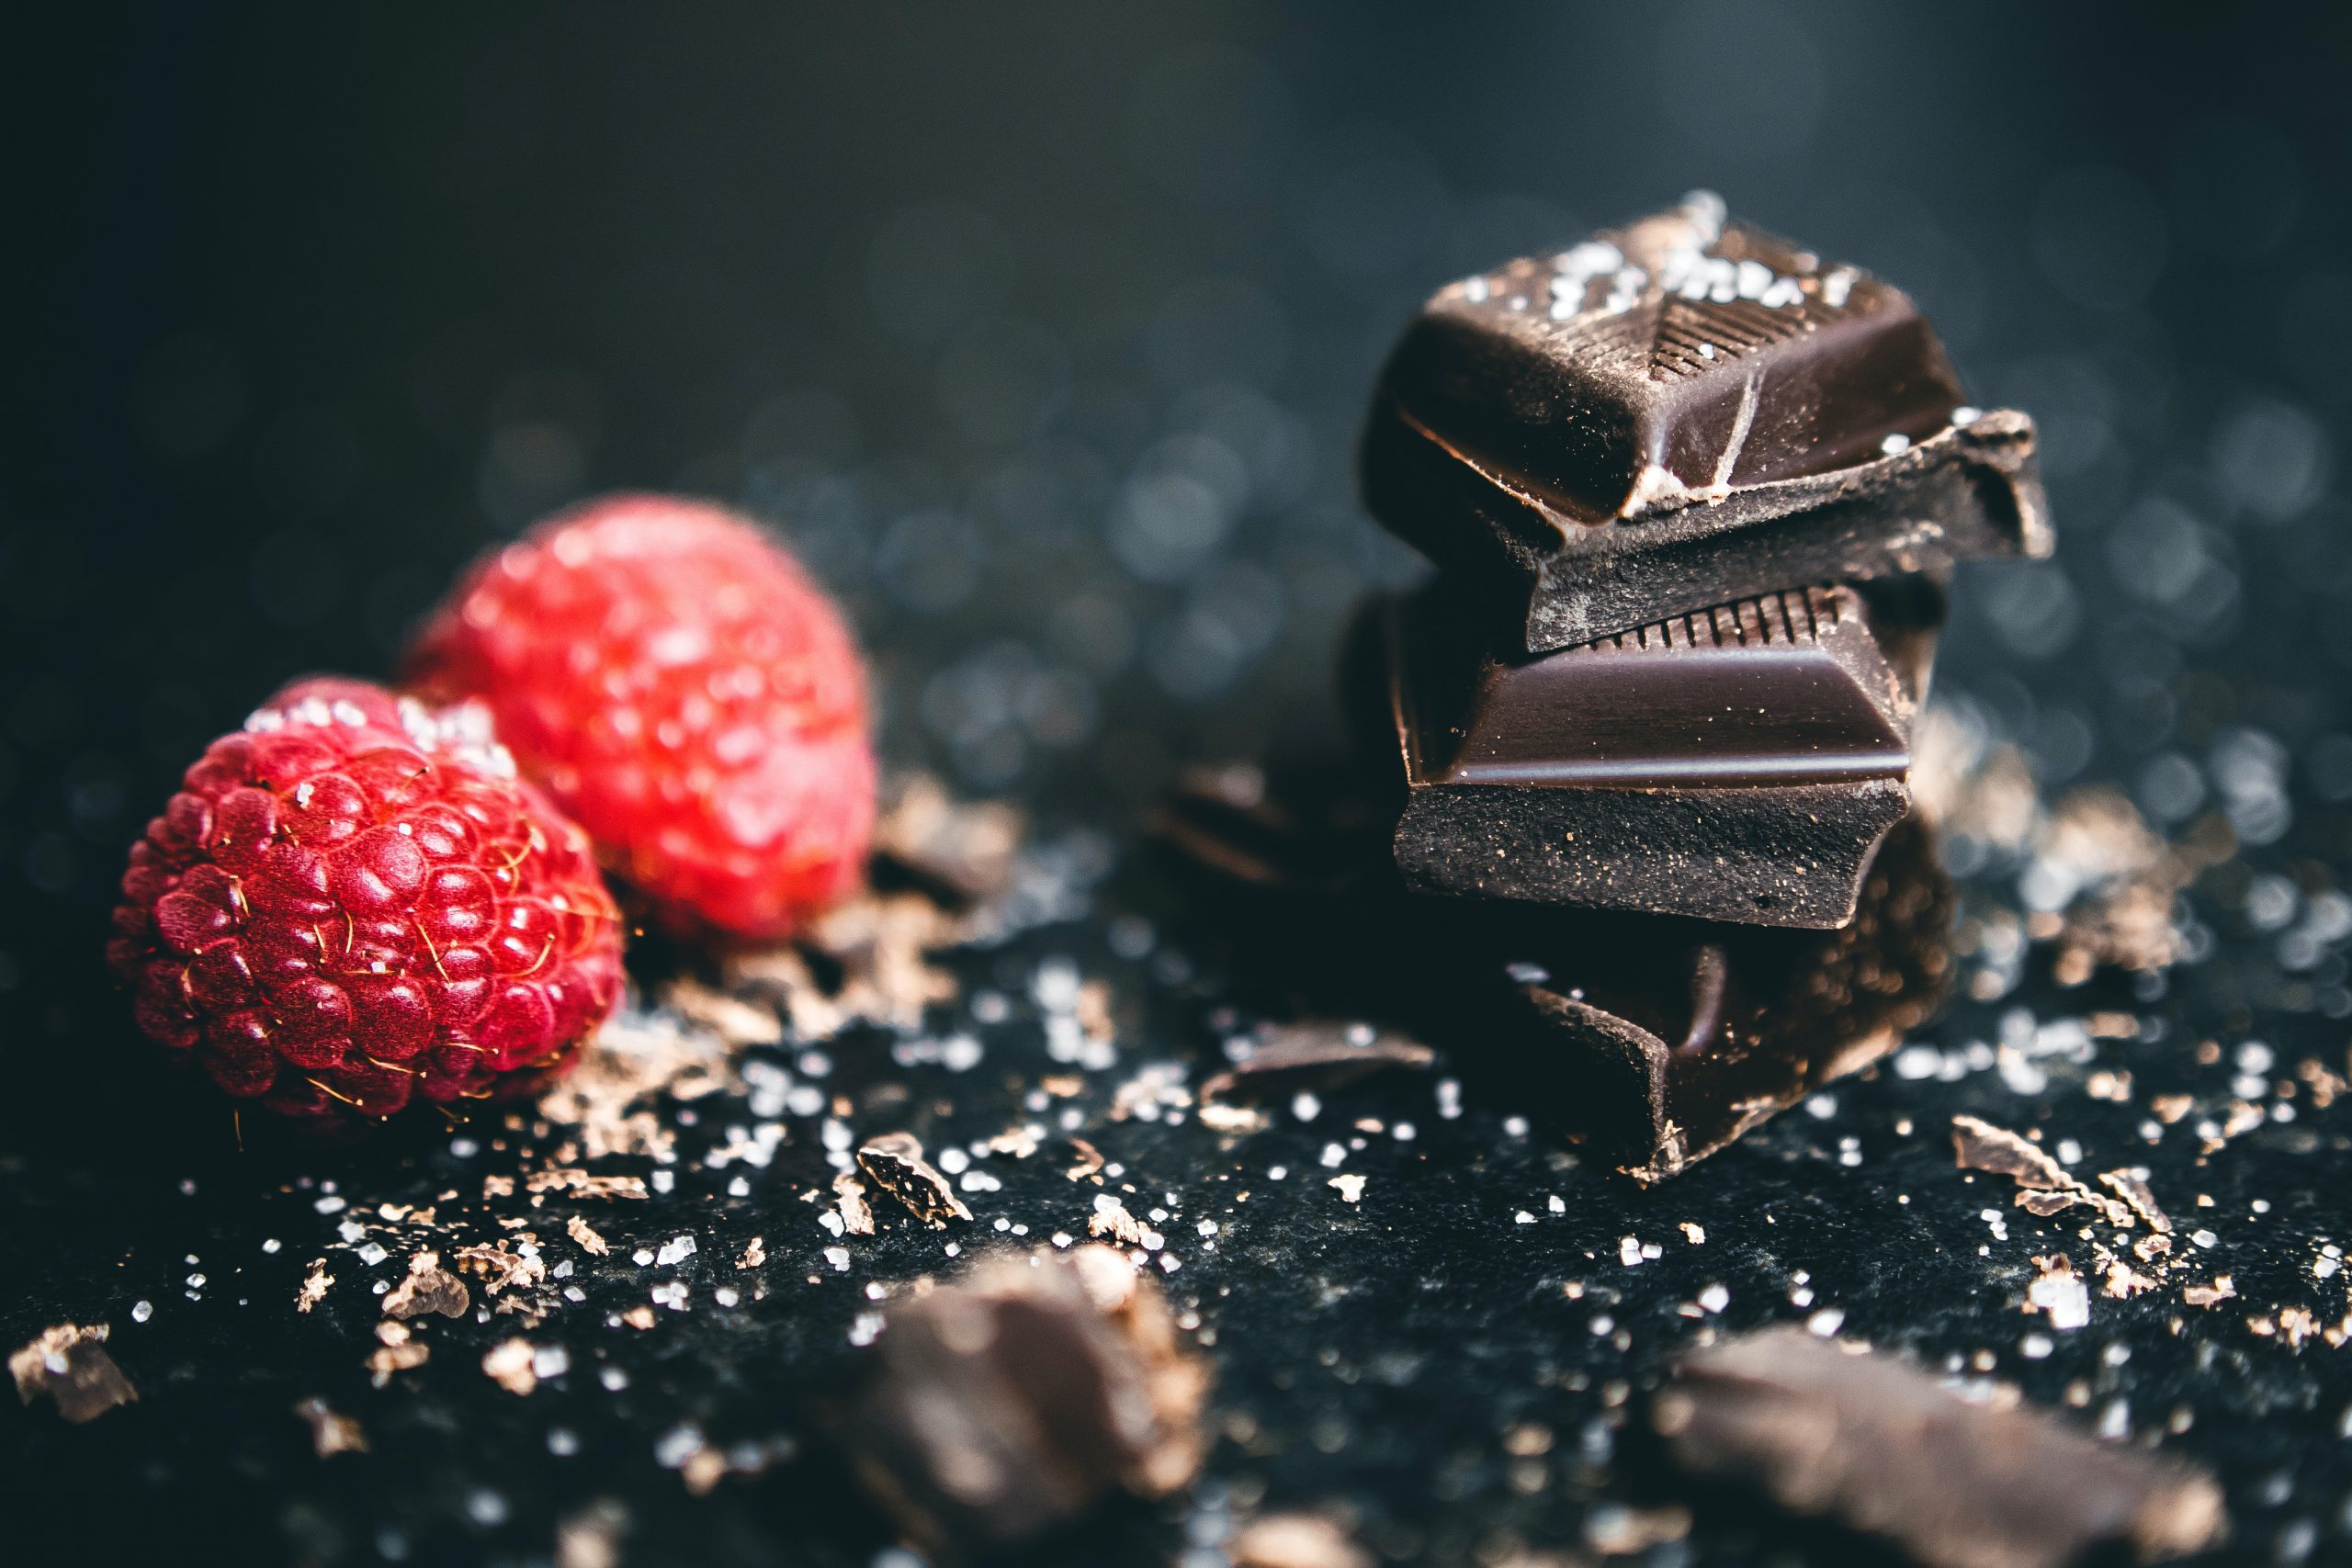 دراسات: الشوكولاته تشكل جهاز مناعي ضد ضعف النظر وتعمل على تقويته